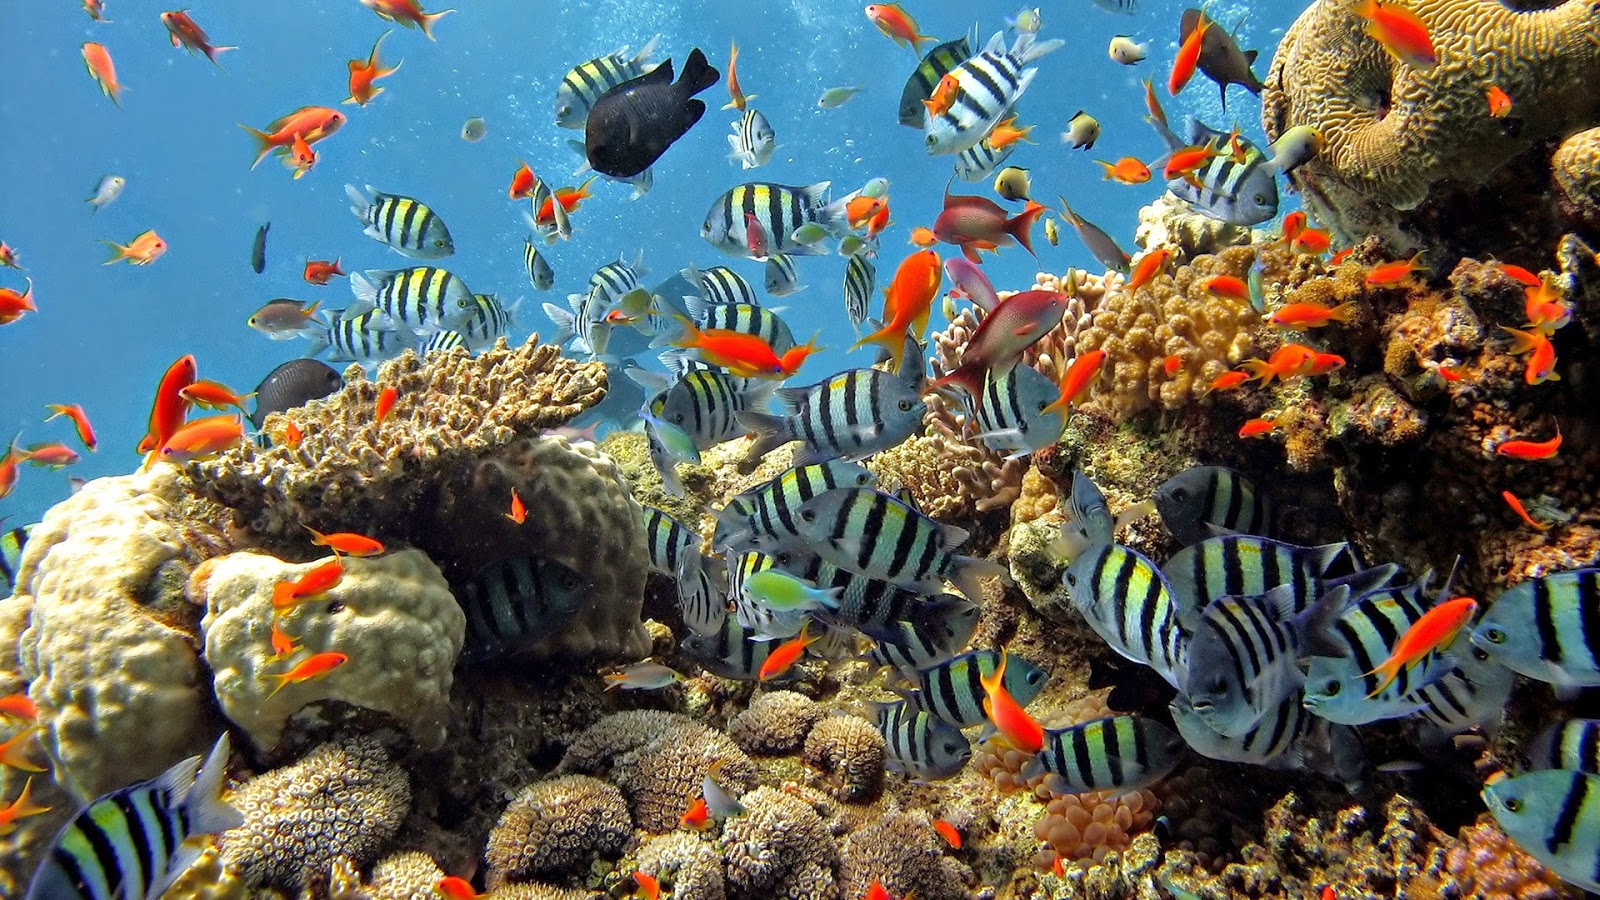 coral reef wallpaper hd,coral reef,reef,coral reef fish,underwater,marine biology